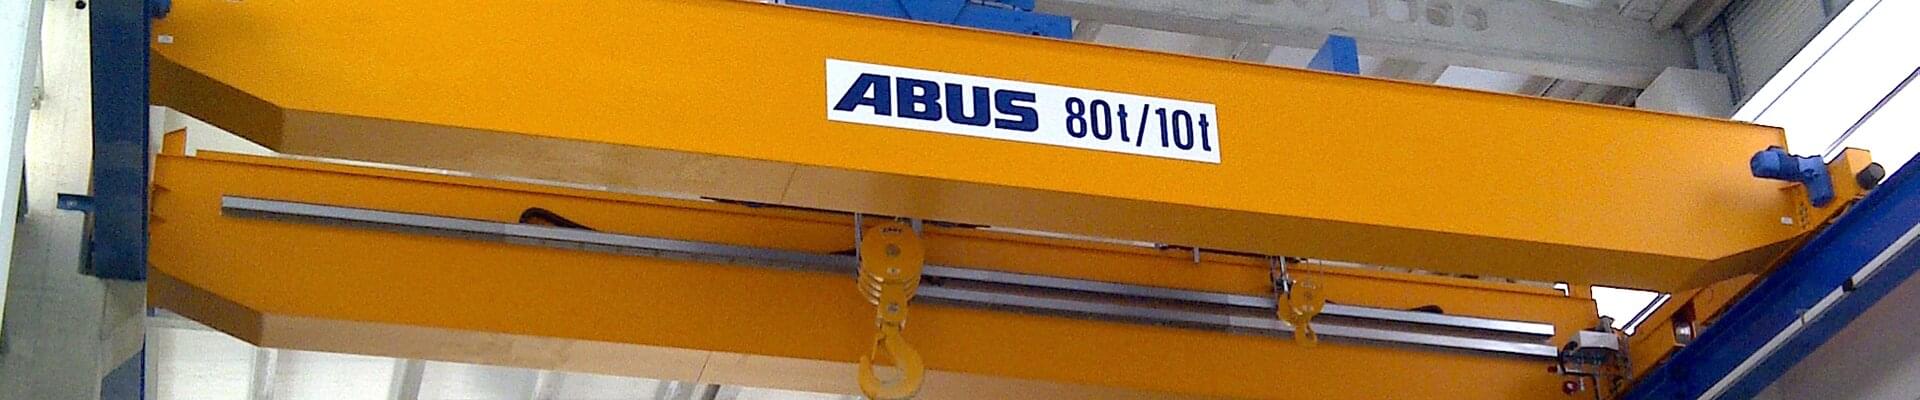 Suwnica ABUS o nośności 80t/10t w firmie stoczniowej w północno-zachodniej Hiszpanii 